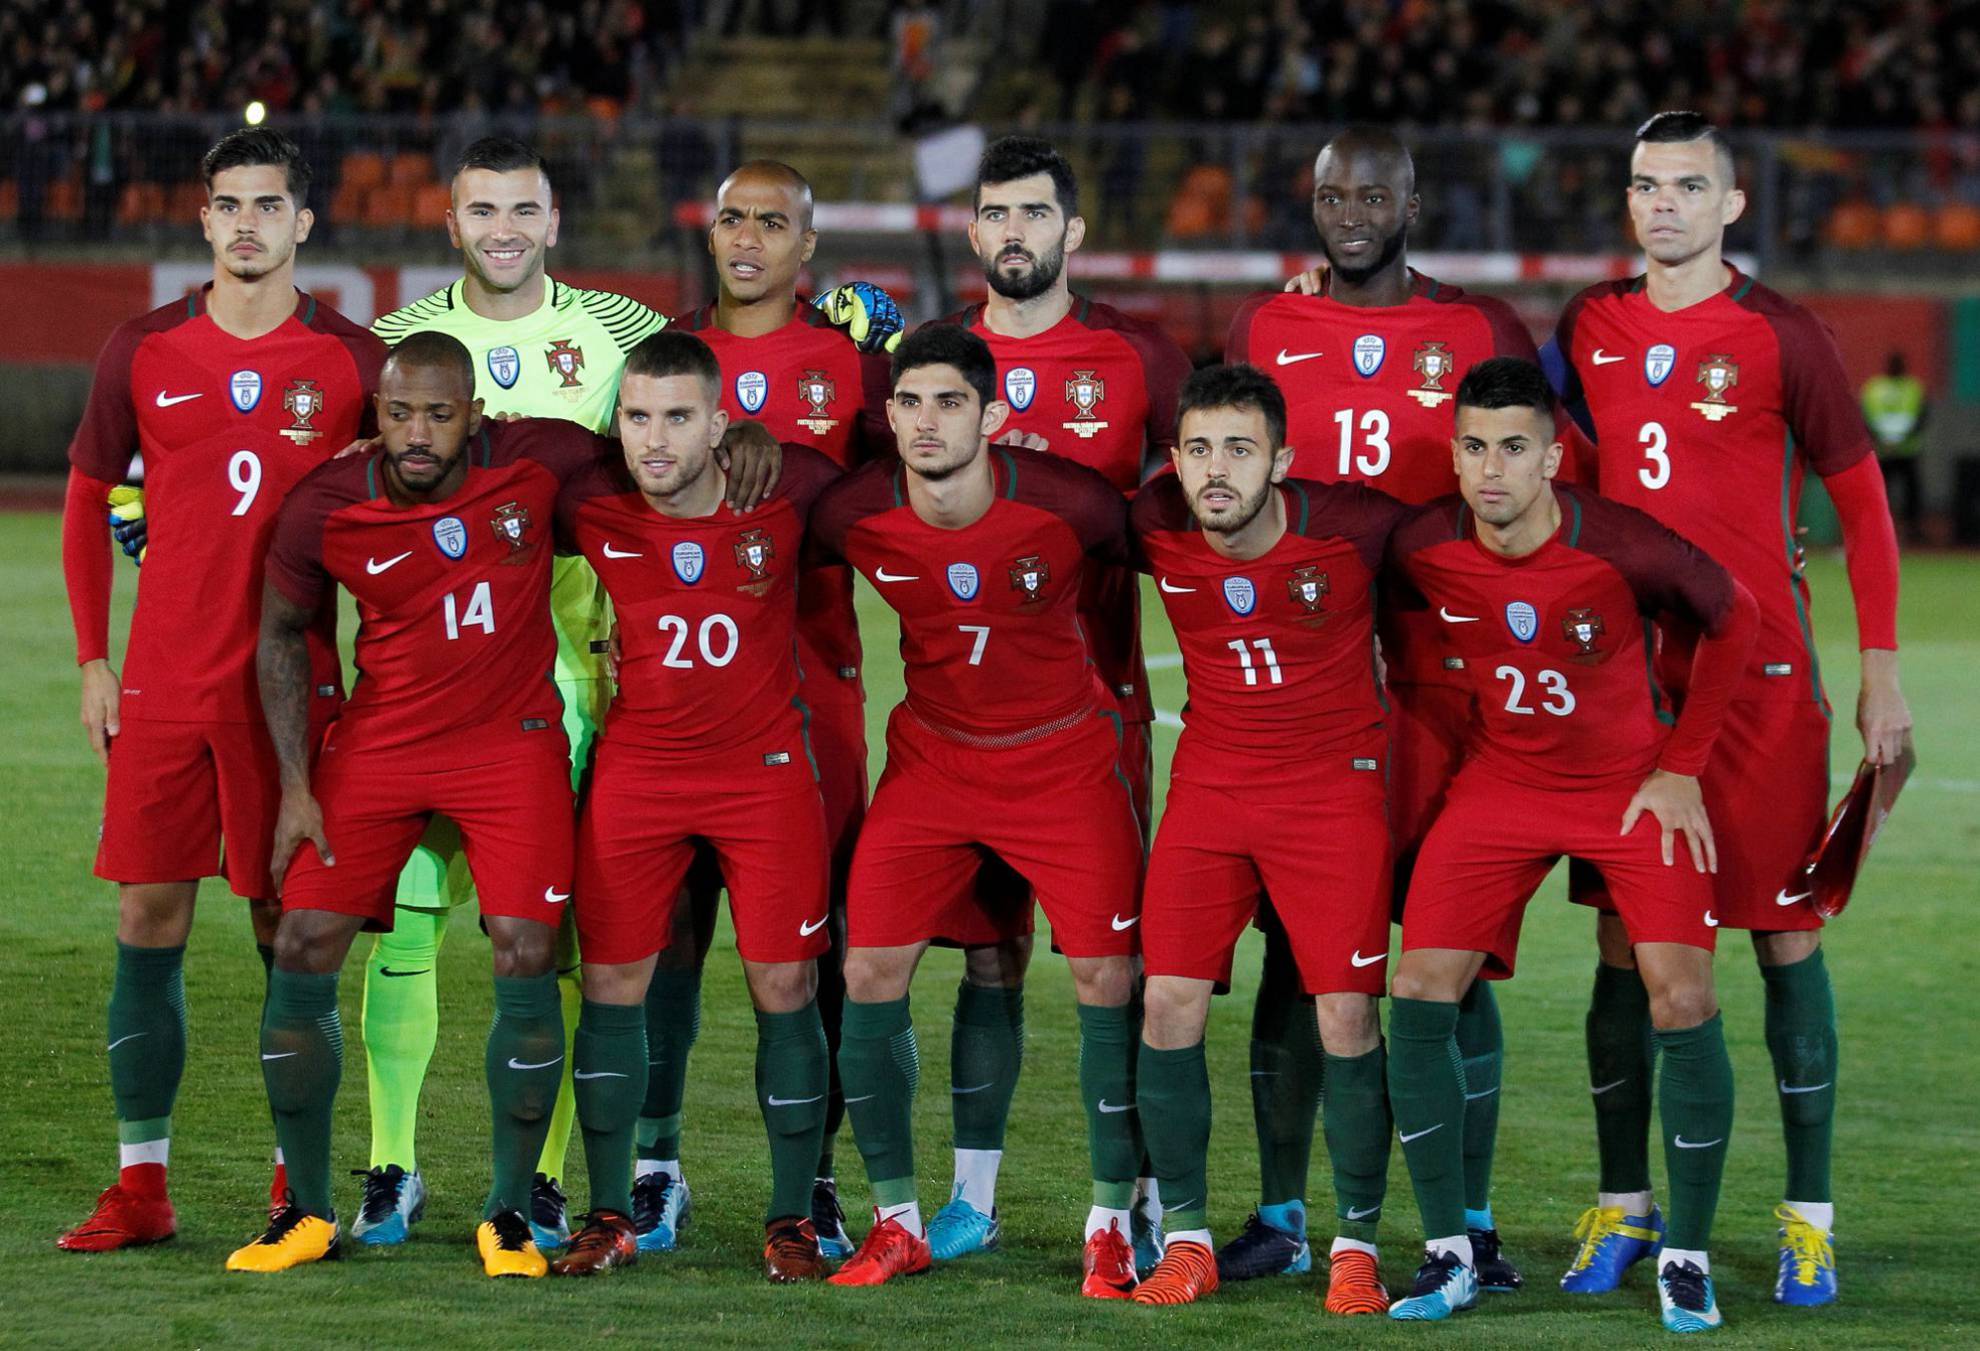 cómodo Ideal Repetido Alineación de Portugal en el Mundial 2018: lista y dorsales - AS.com